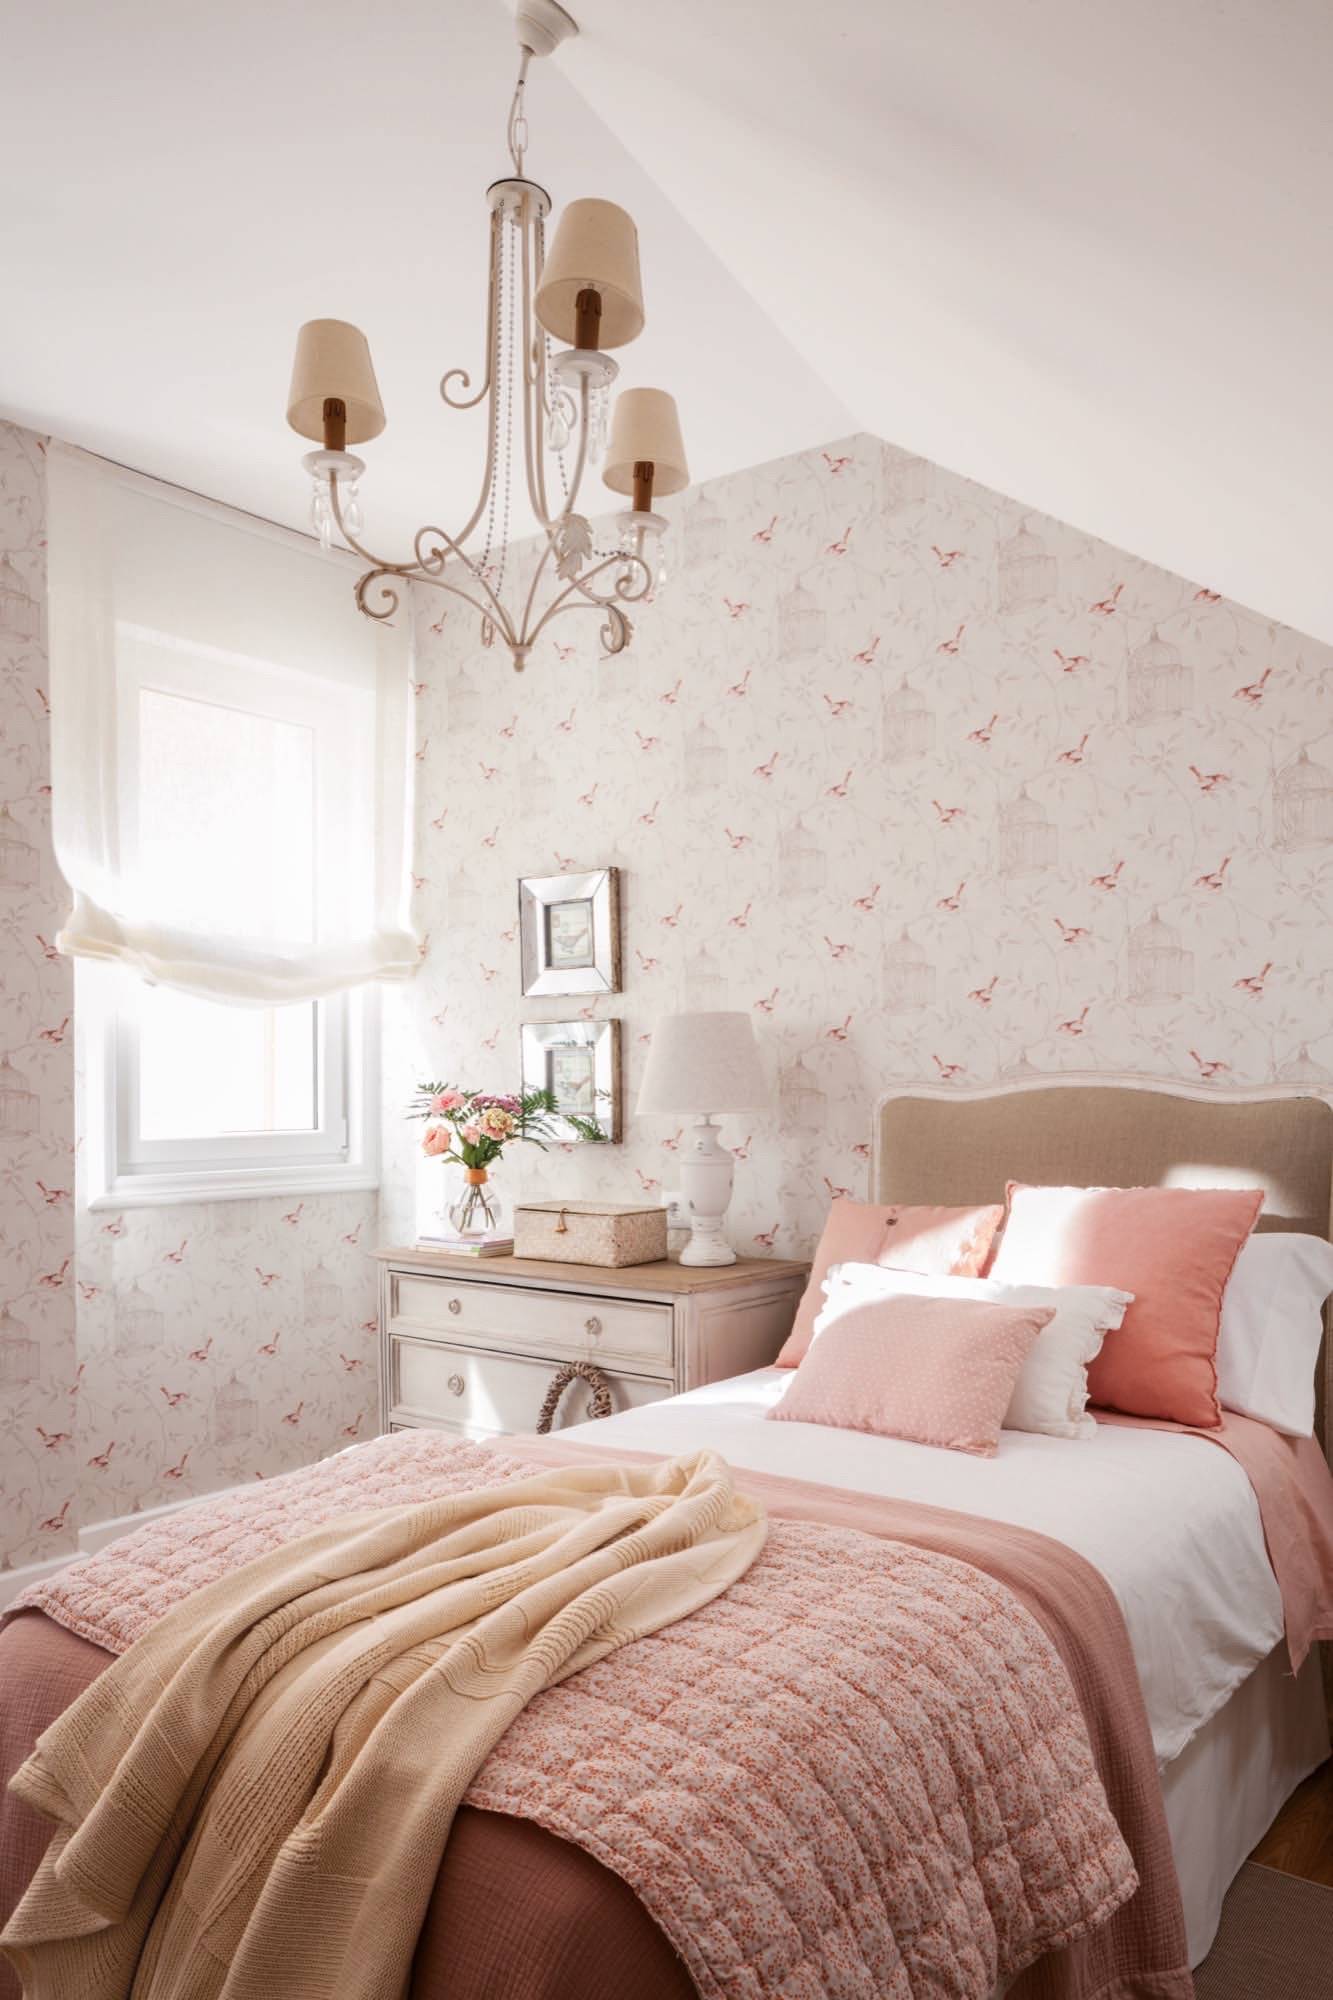 Habitación infantil de estilo romántico afrancesado decorada en tonos rosas